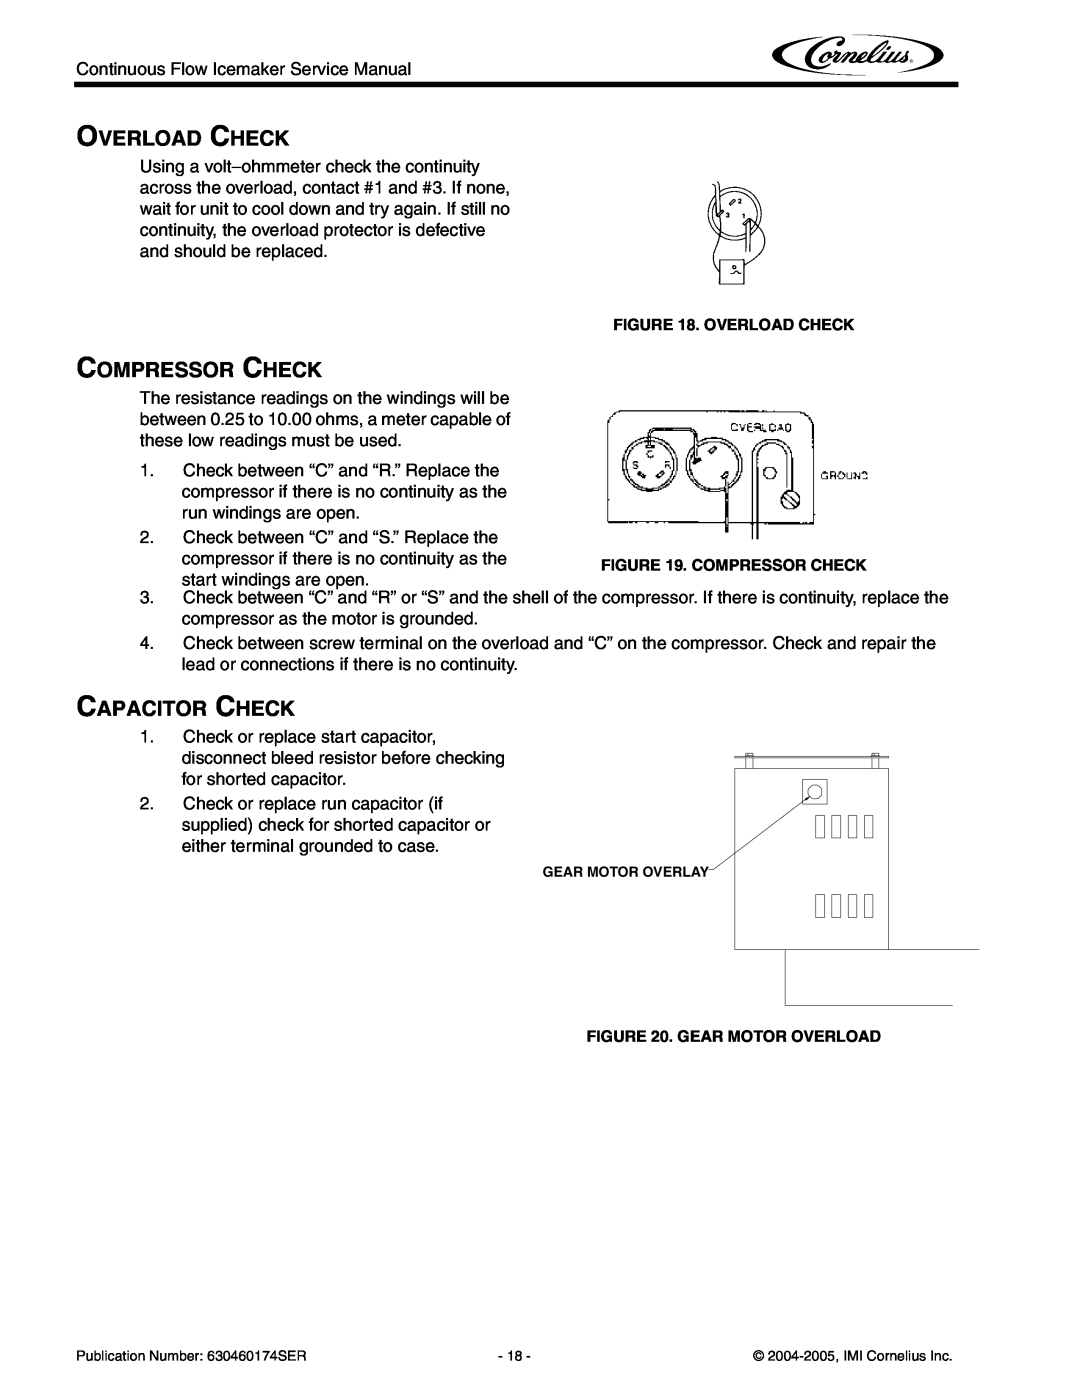 Cornelius 1000 - Series, 700 - Series, 2000 - Series Overload Check, Compressor Check, Capacitor Check, Gear Motor Overload 